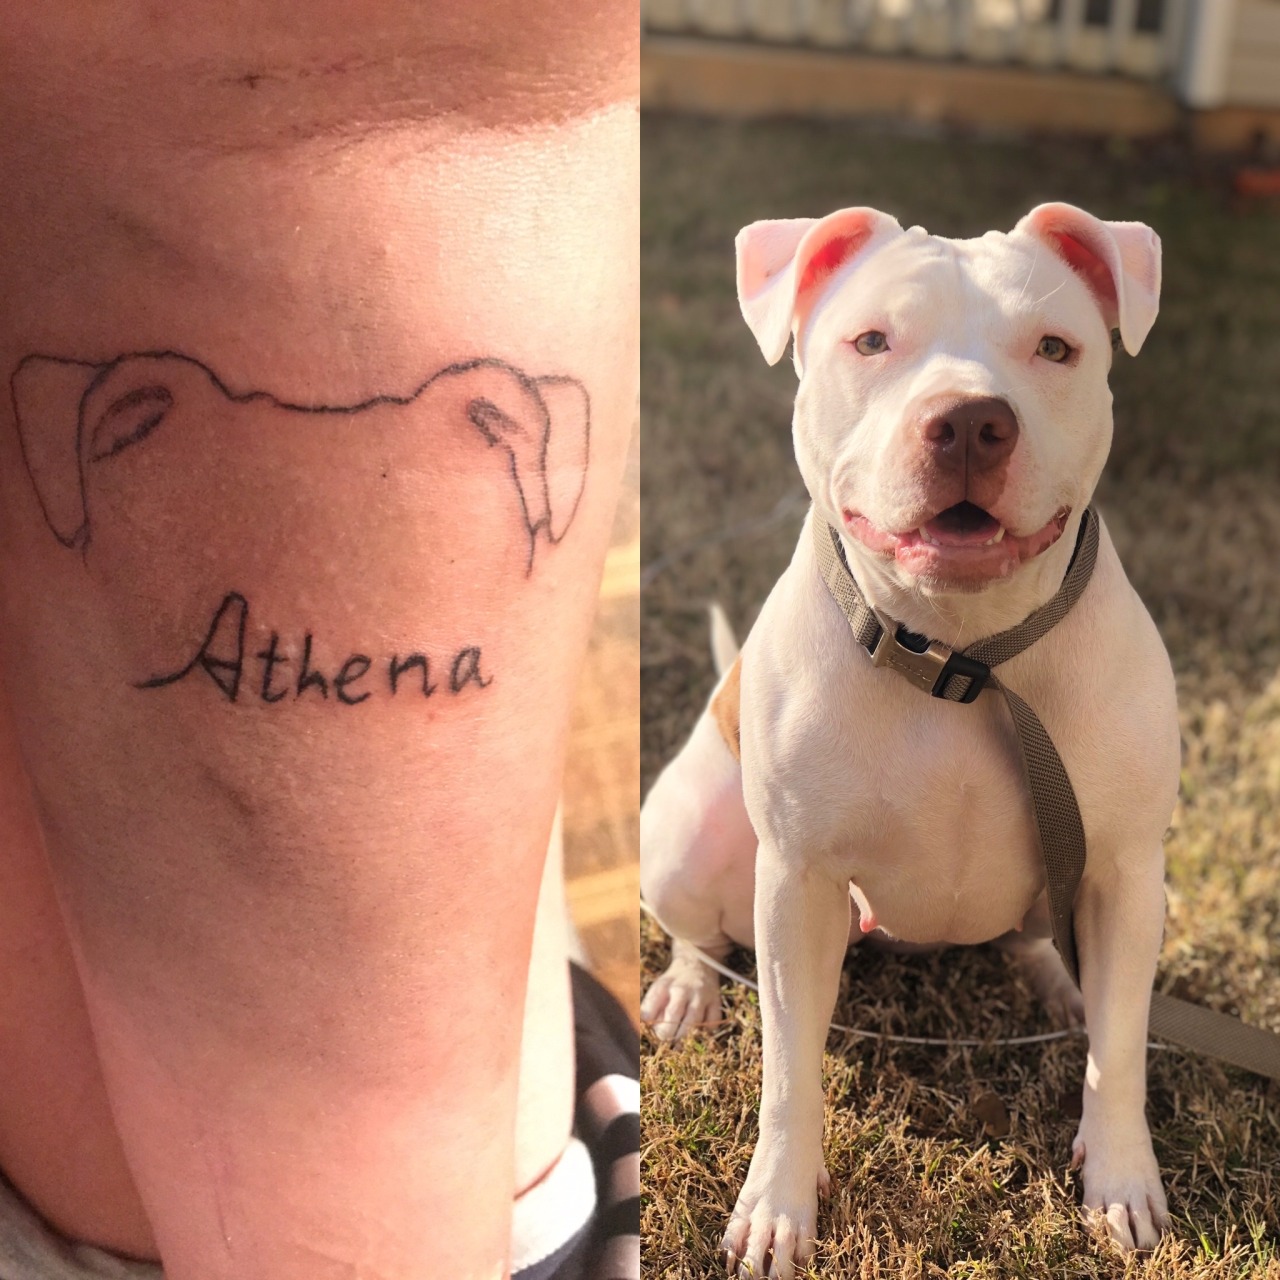 BarkBox Is Giving Away Free Tattoos So I Got A Minimalist Dog Tattoo